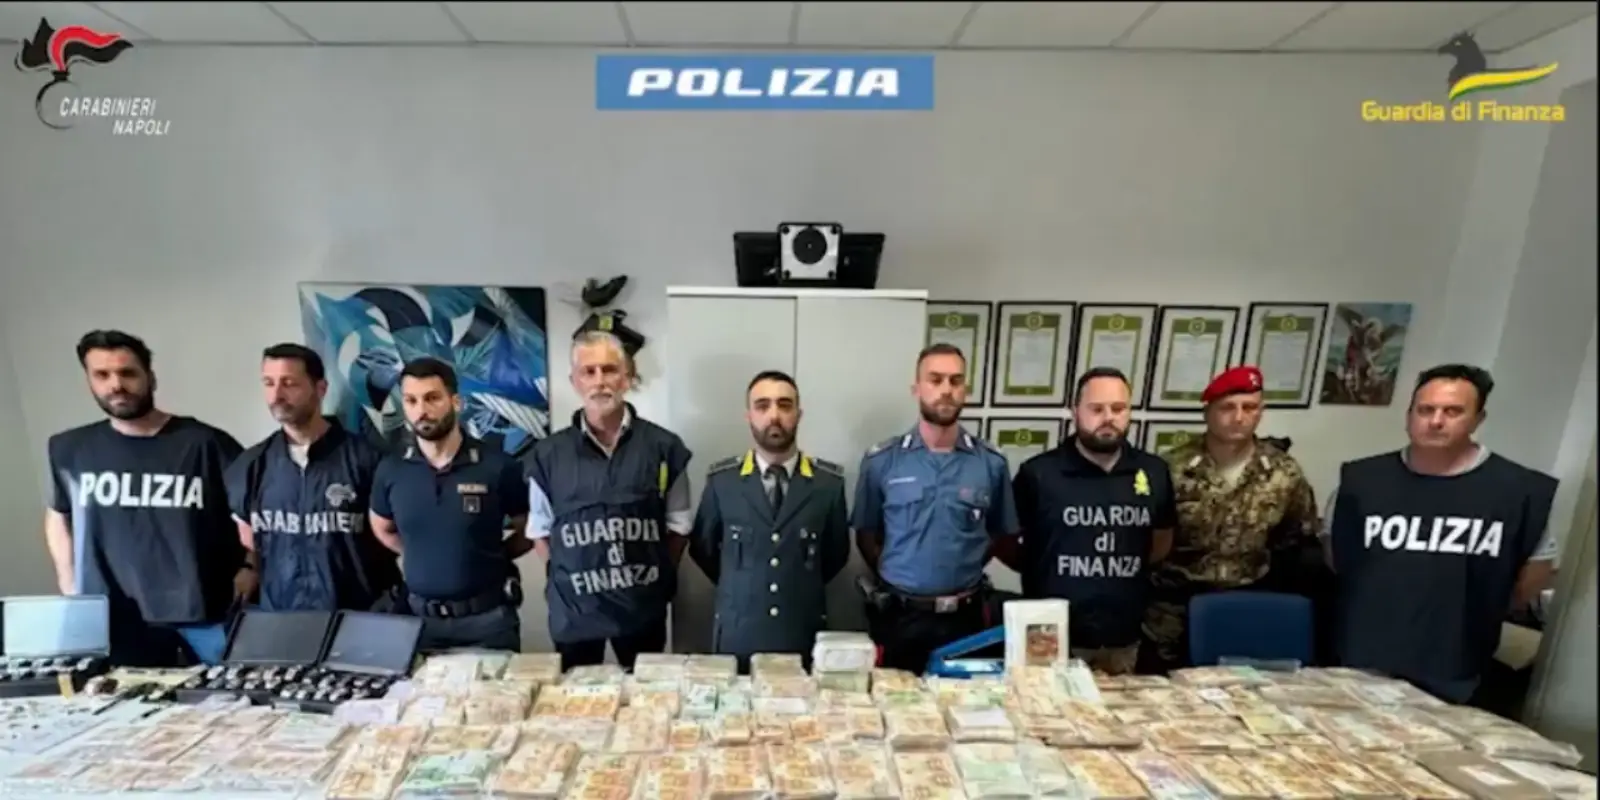 Encuentran el ‘tesoro’ de un mafioso en Nápoles con valor de 9 mde en dinero y joyas